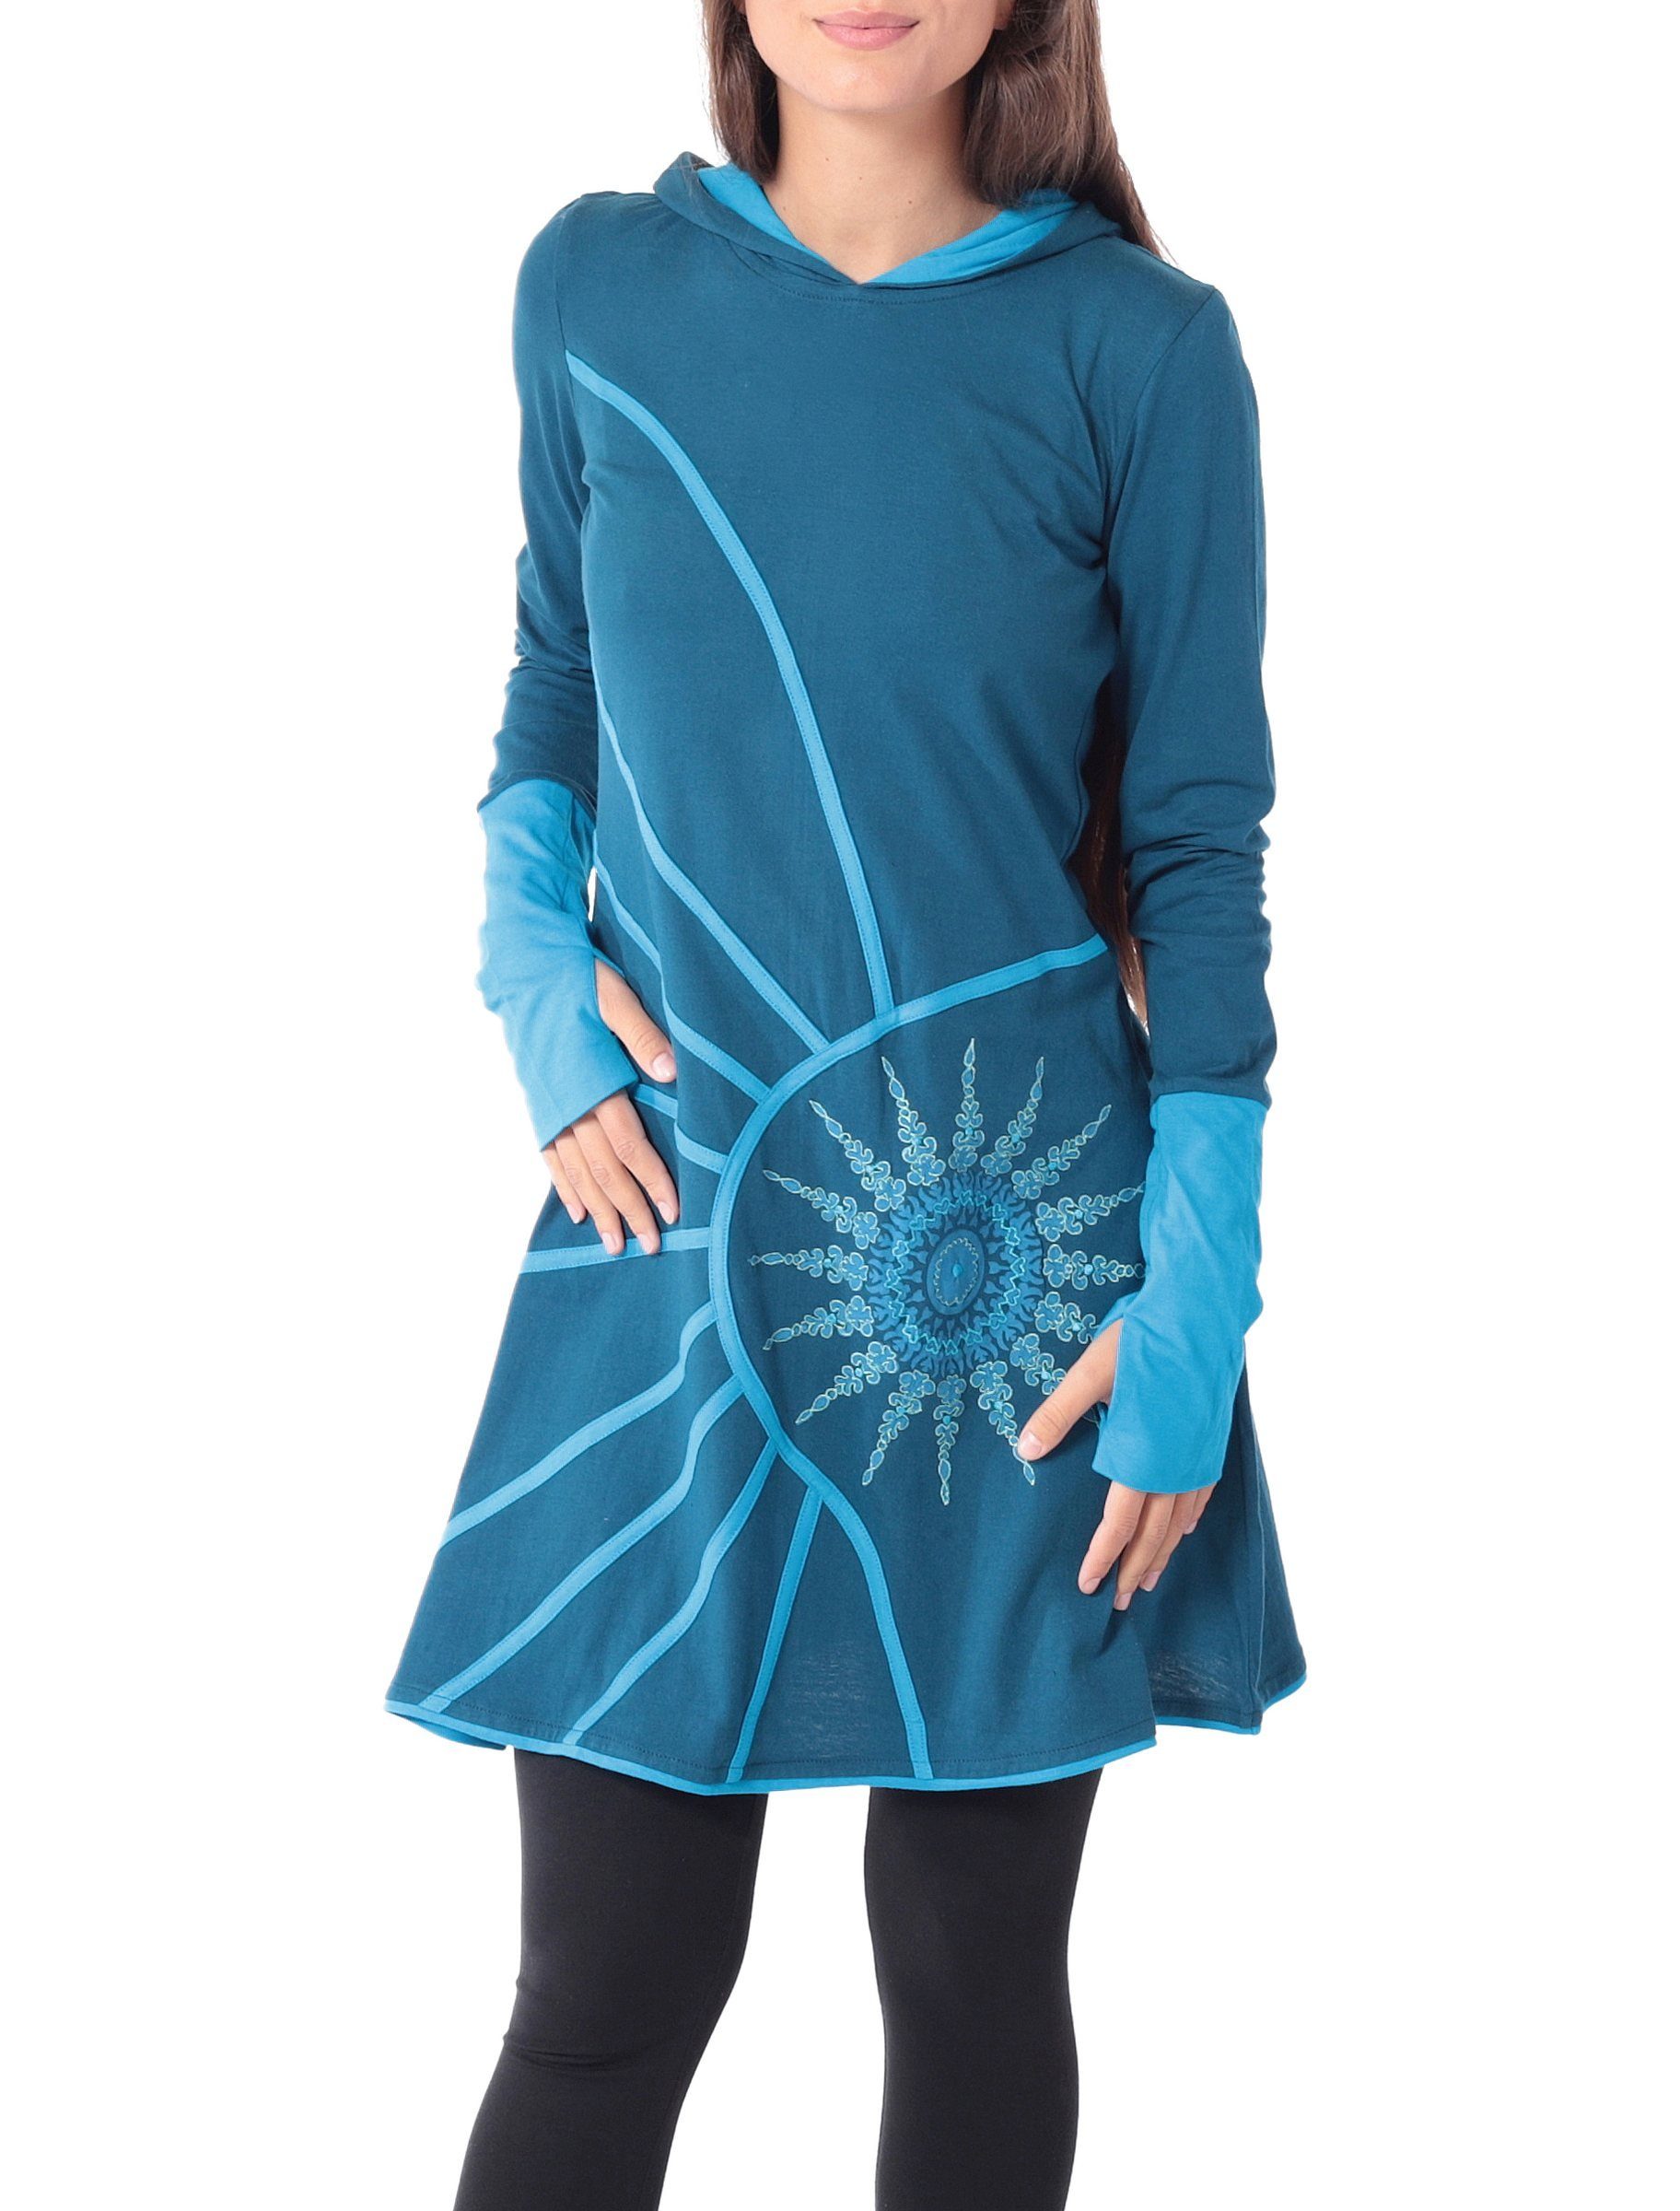 PUREWONDER Sweatkleid Langärmliges Kapuzenkleid aus Jersey Ganzjahreskleid Blau